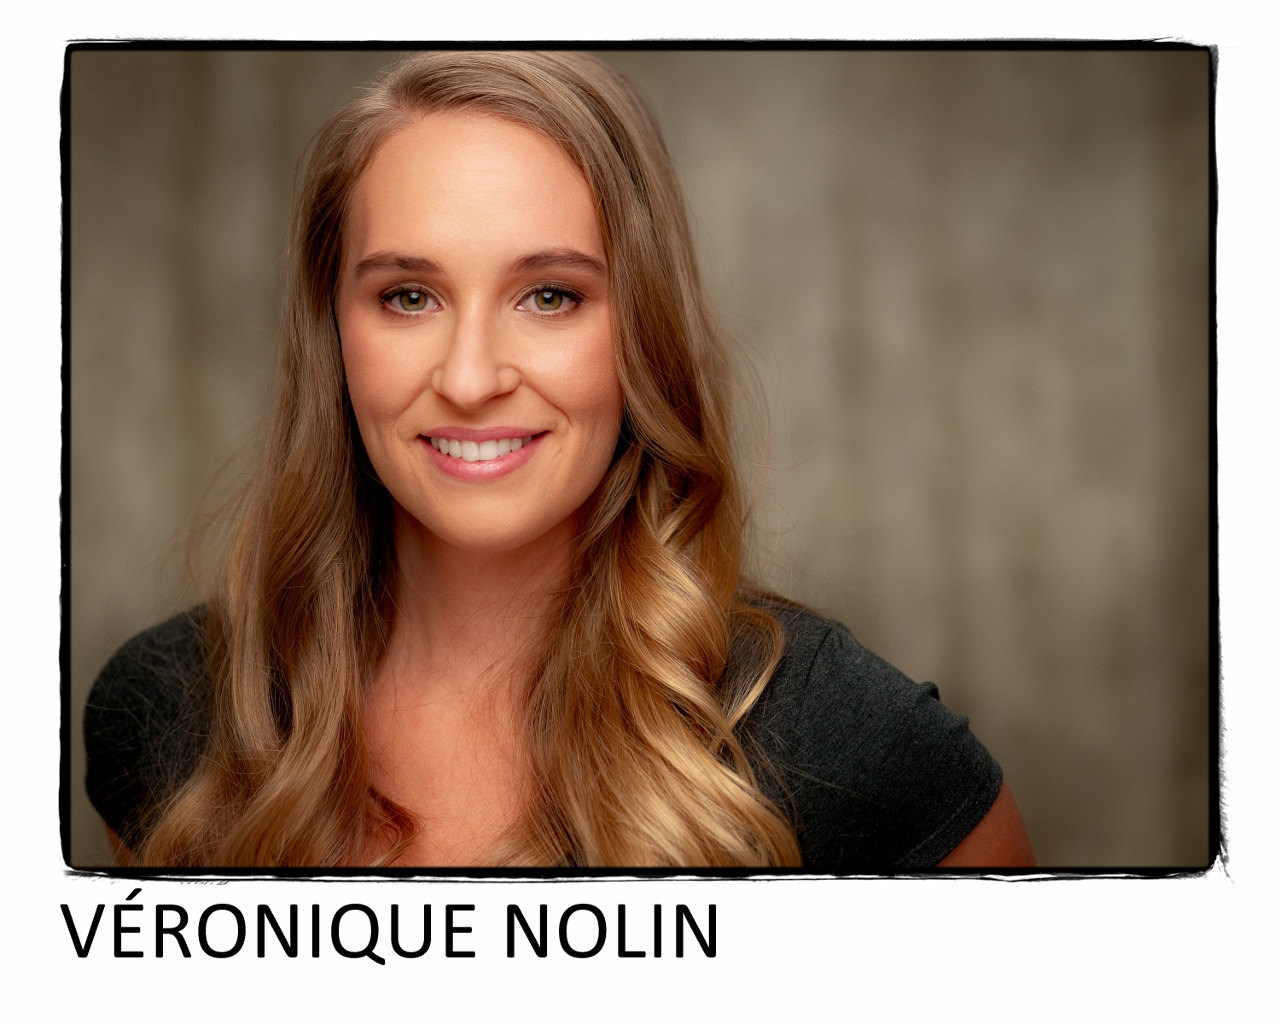 Veronique Nolin